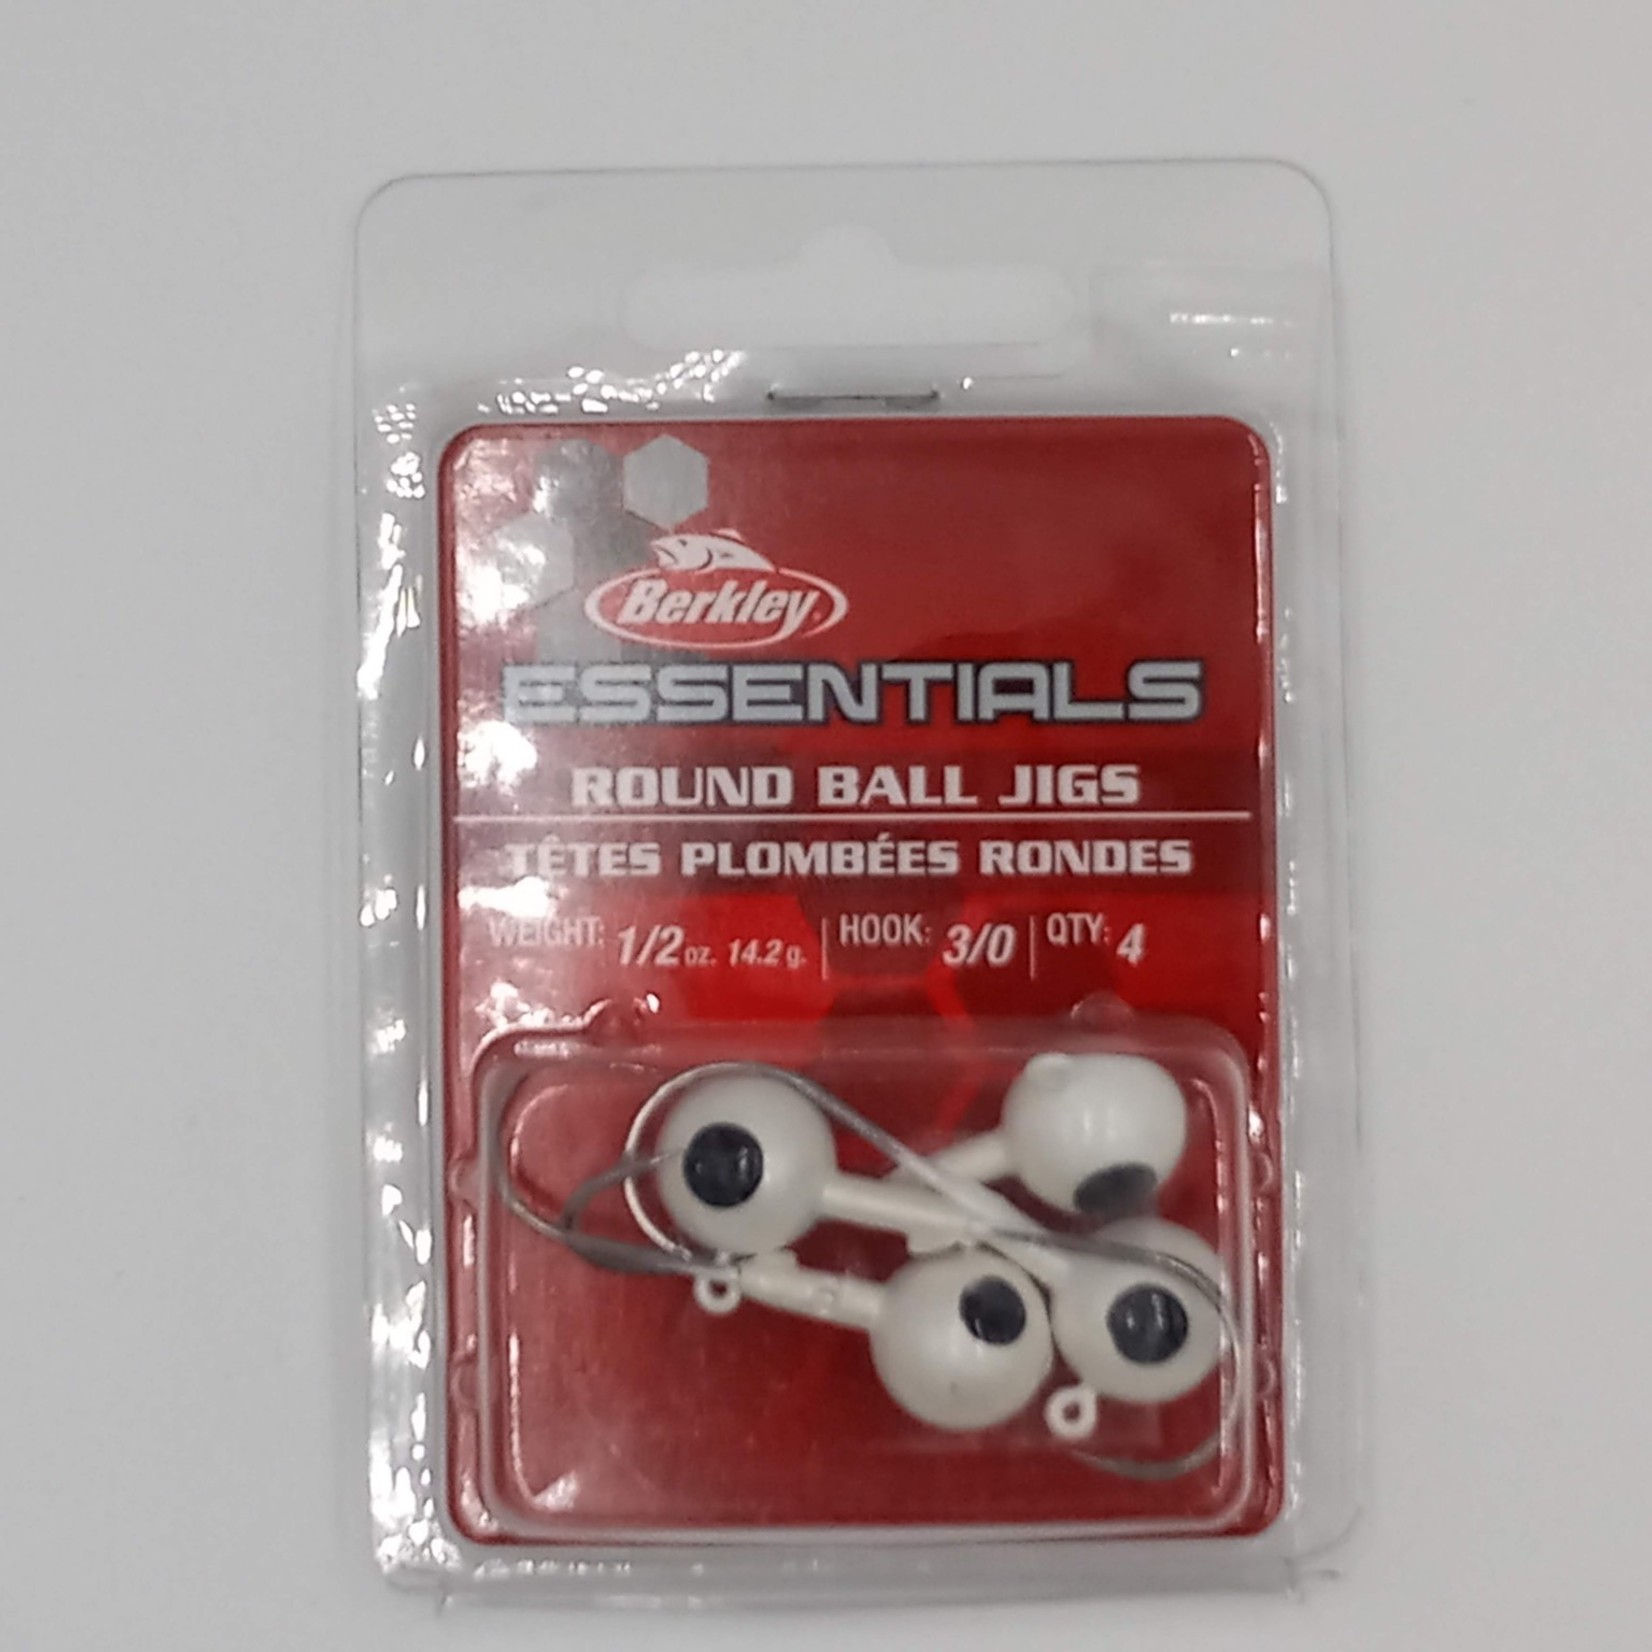 Berkley Berkley Essentials Round Ball Jigs White 3/0 1/2oz